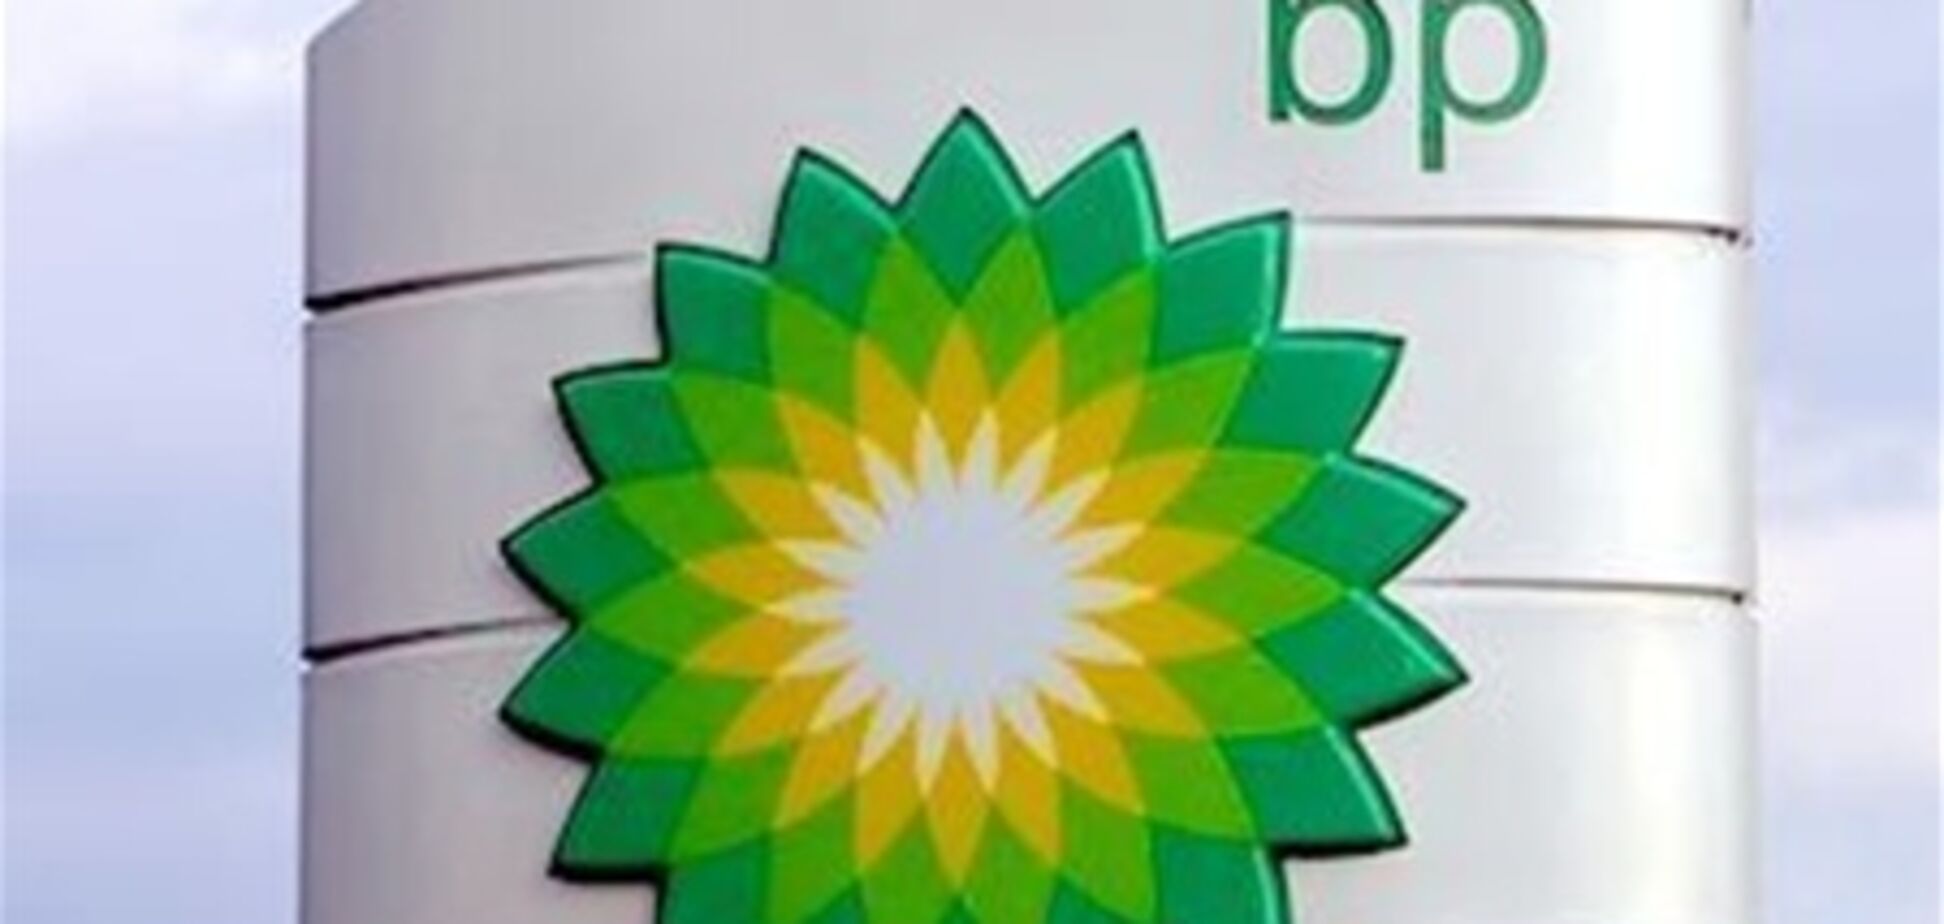 Россиянин решил отсудить у BP $10 млрд